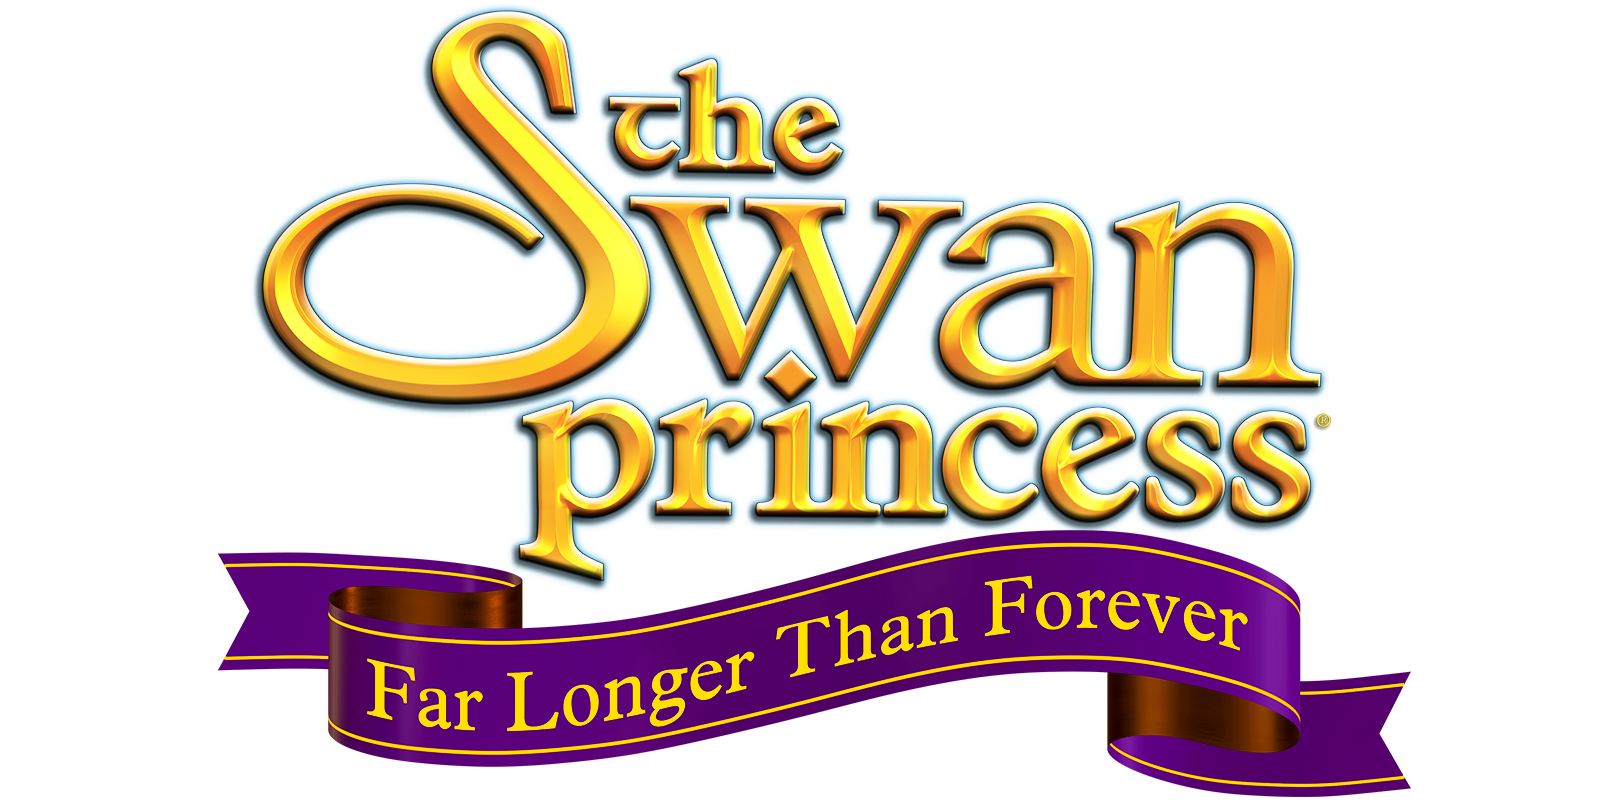 SWAN PRINCESS FAR LONGER THAN FOREVER Available on Digital September